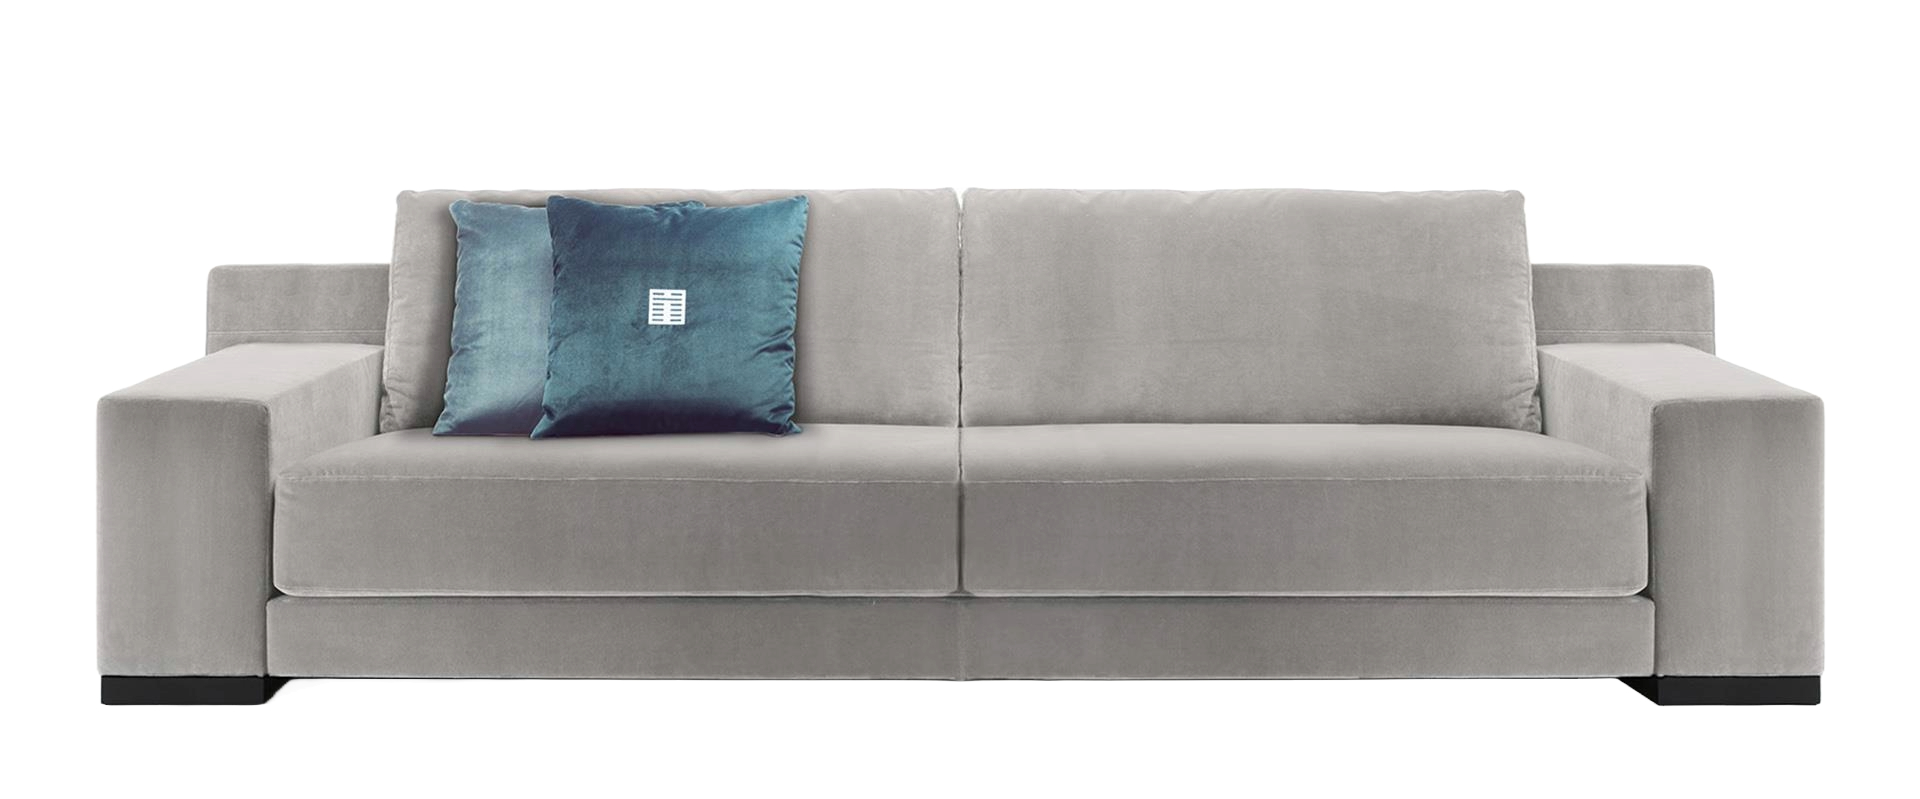 Unique Large Sofa 306 cm